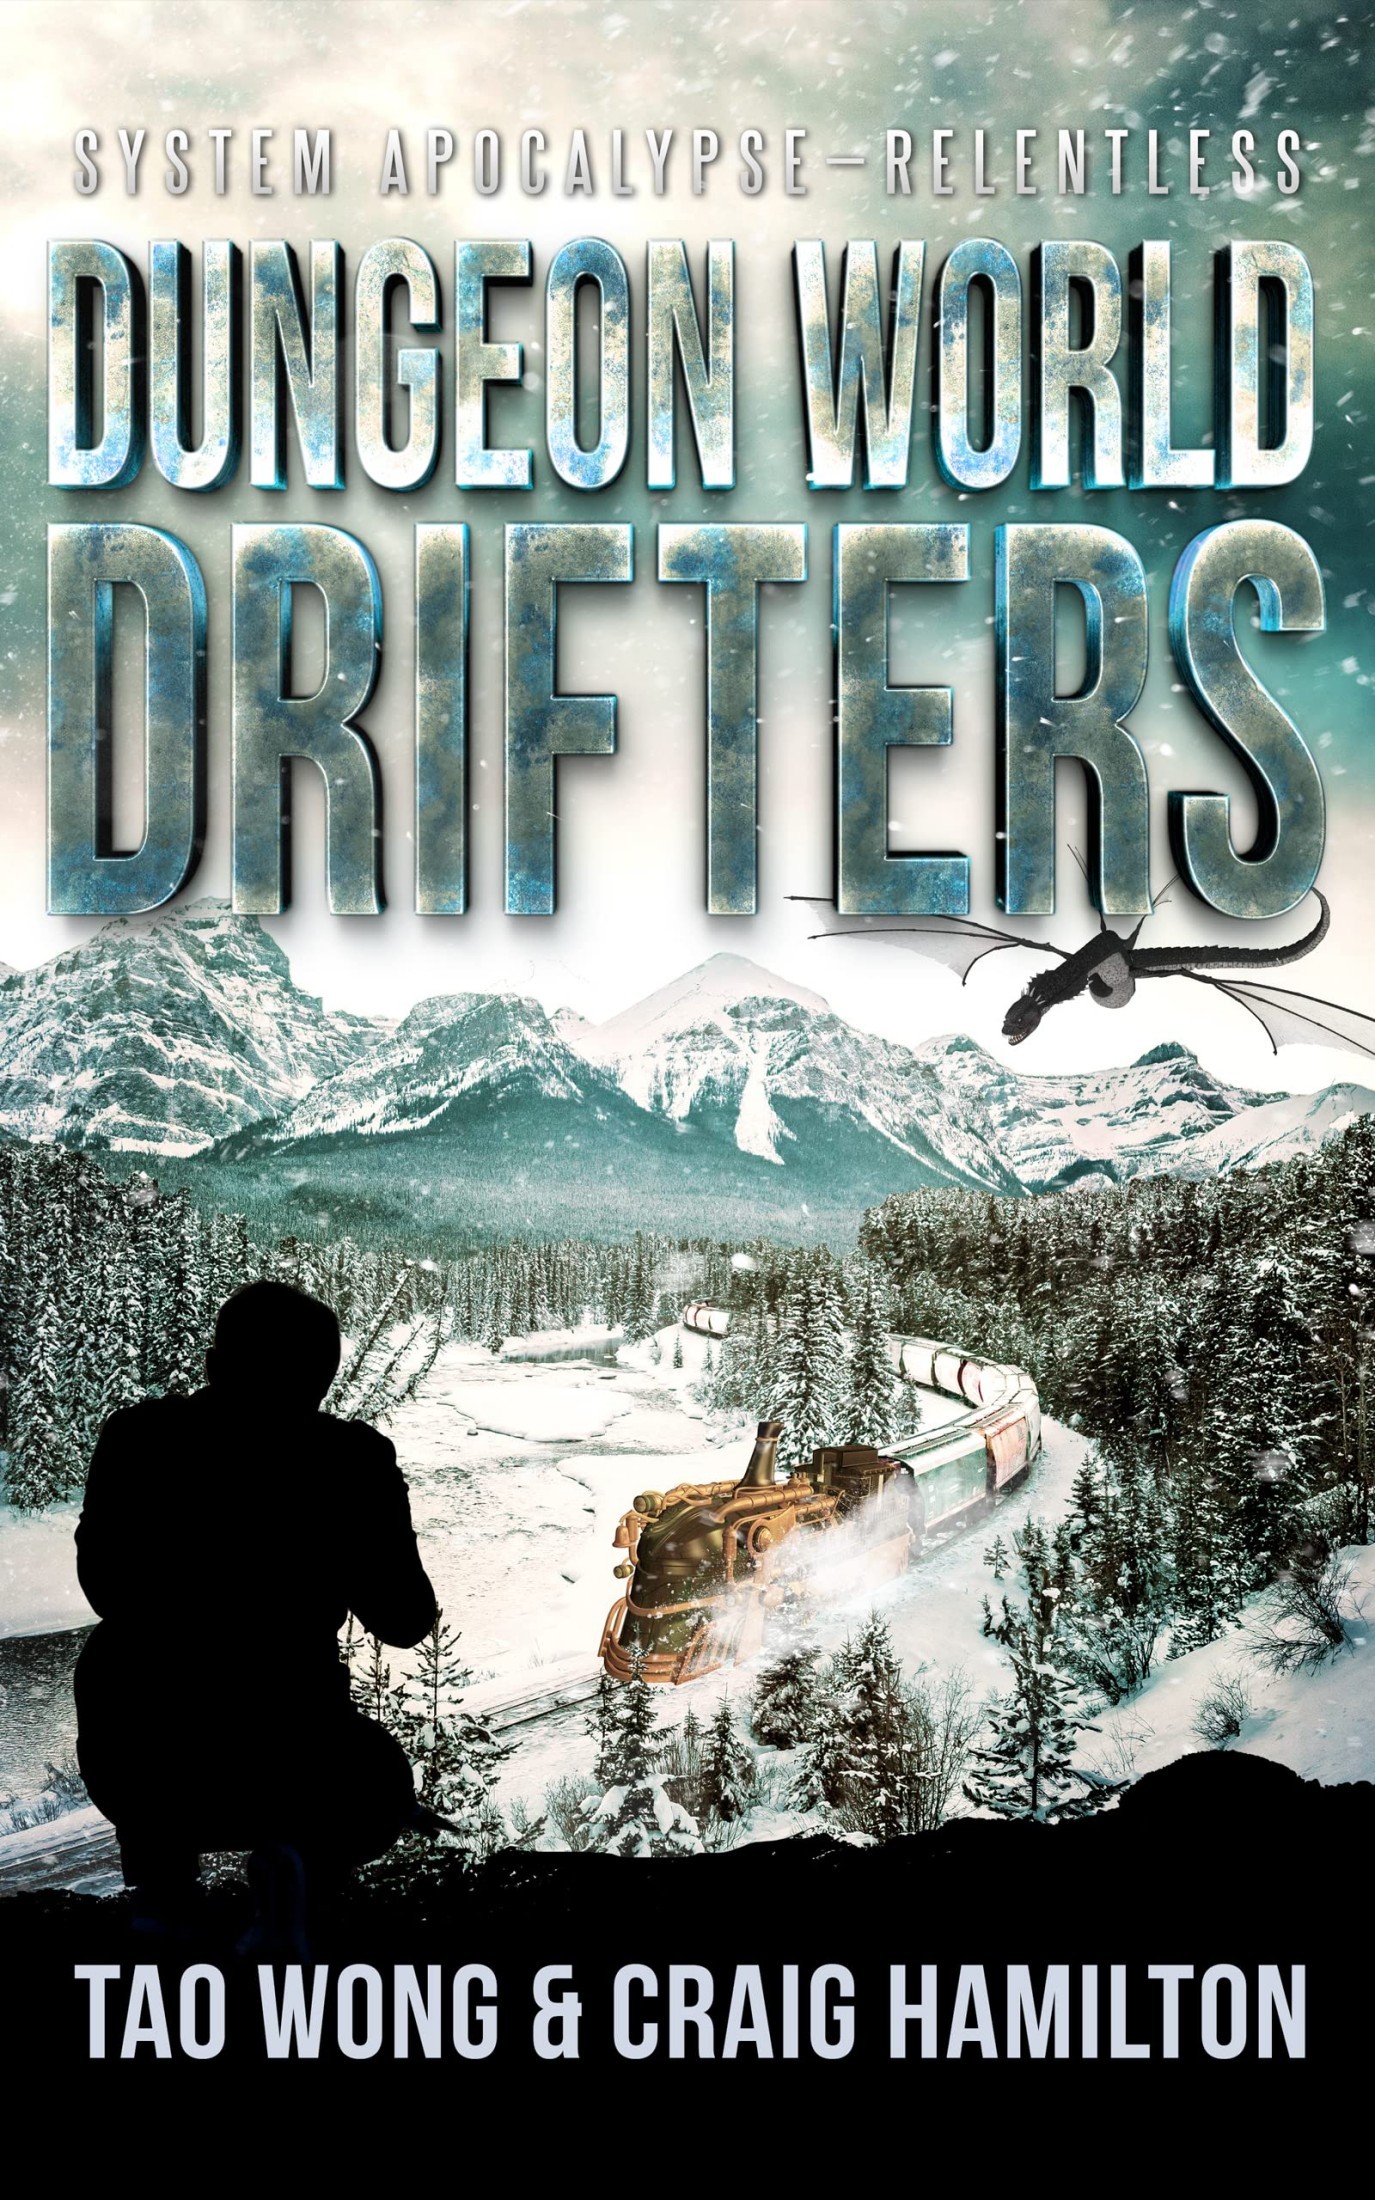 Dungeon World Drifters